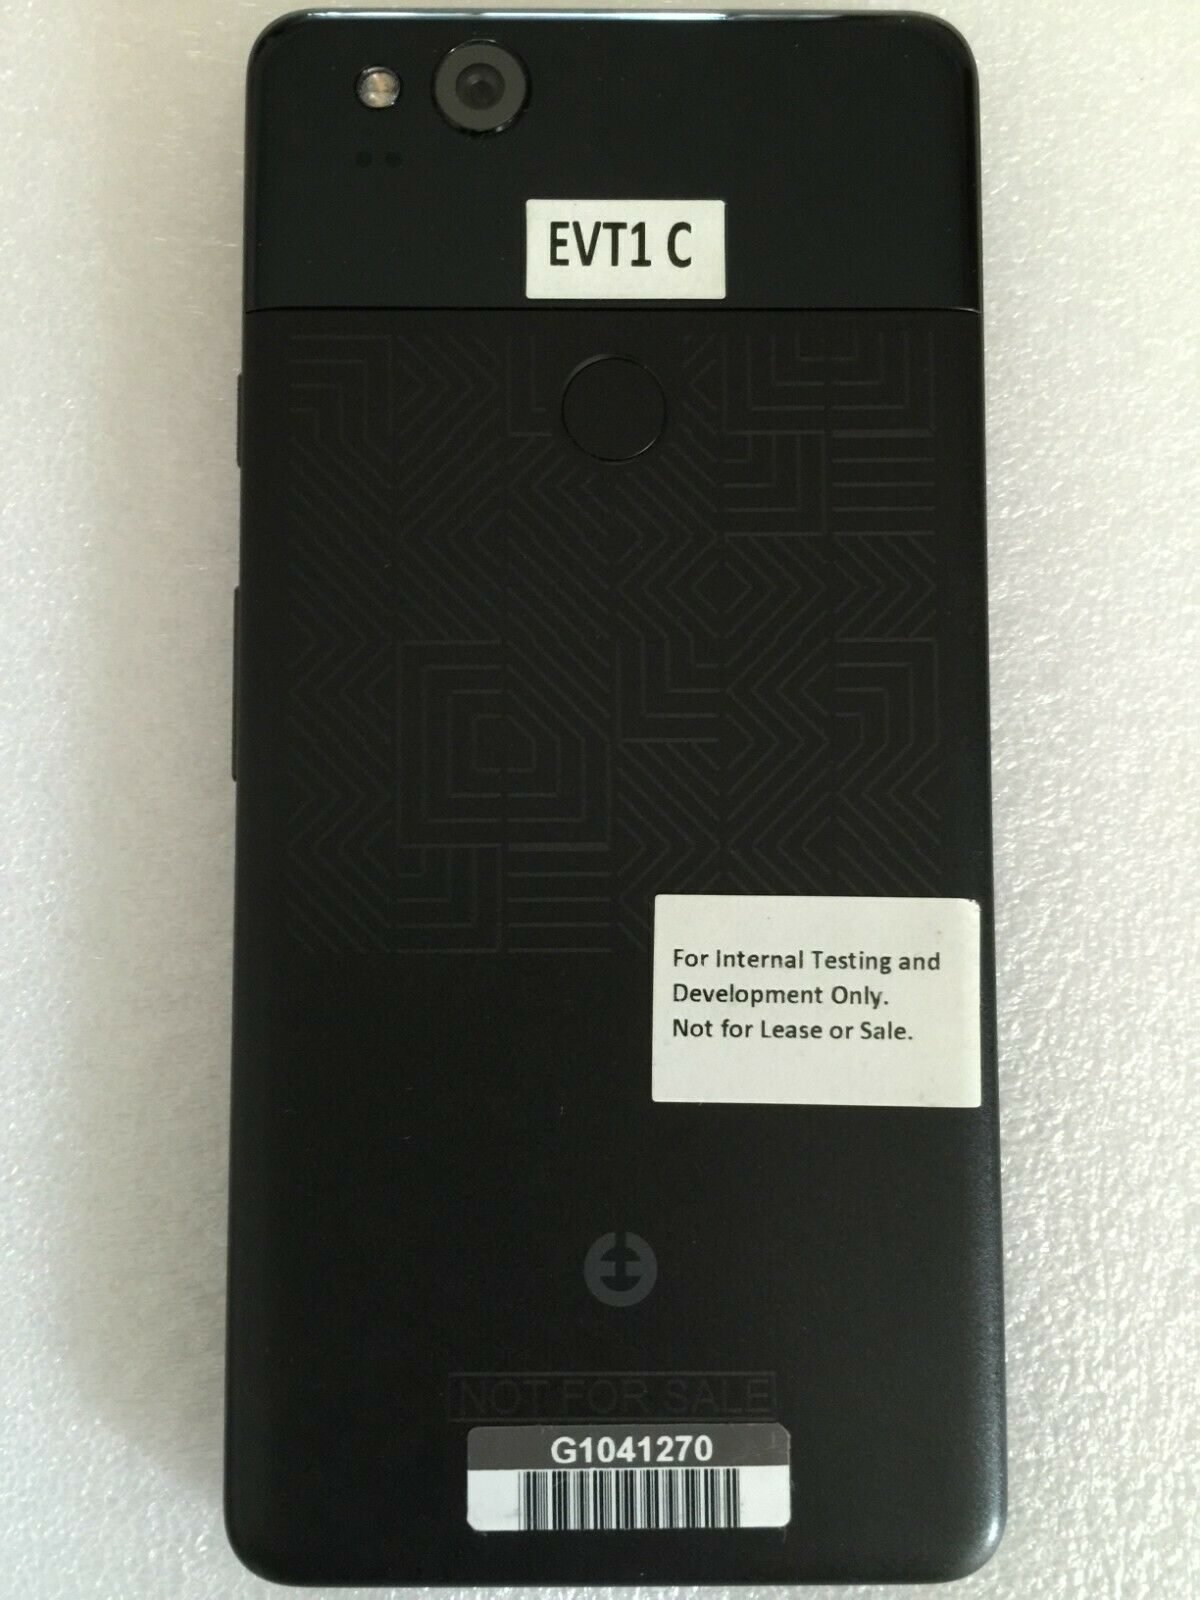 HTC 'muskie' का प्रोटोटाइप, Google Pixel 2 XL जो कभी अस्तित्व में नहीं था